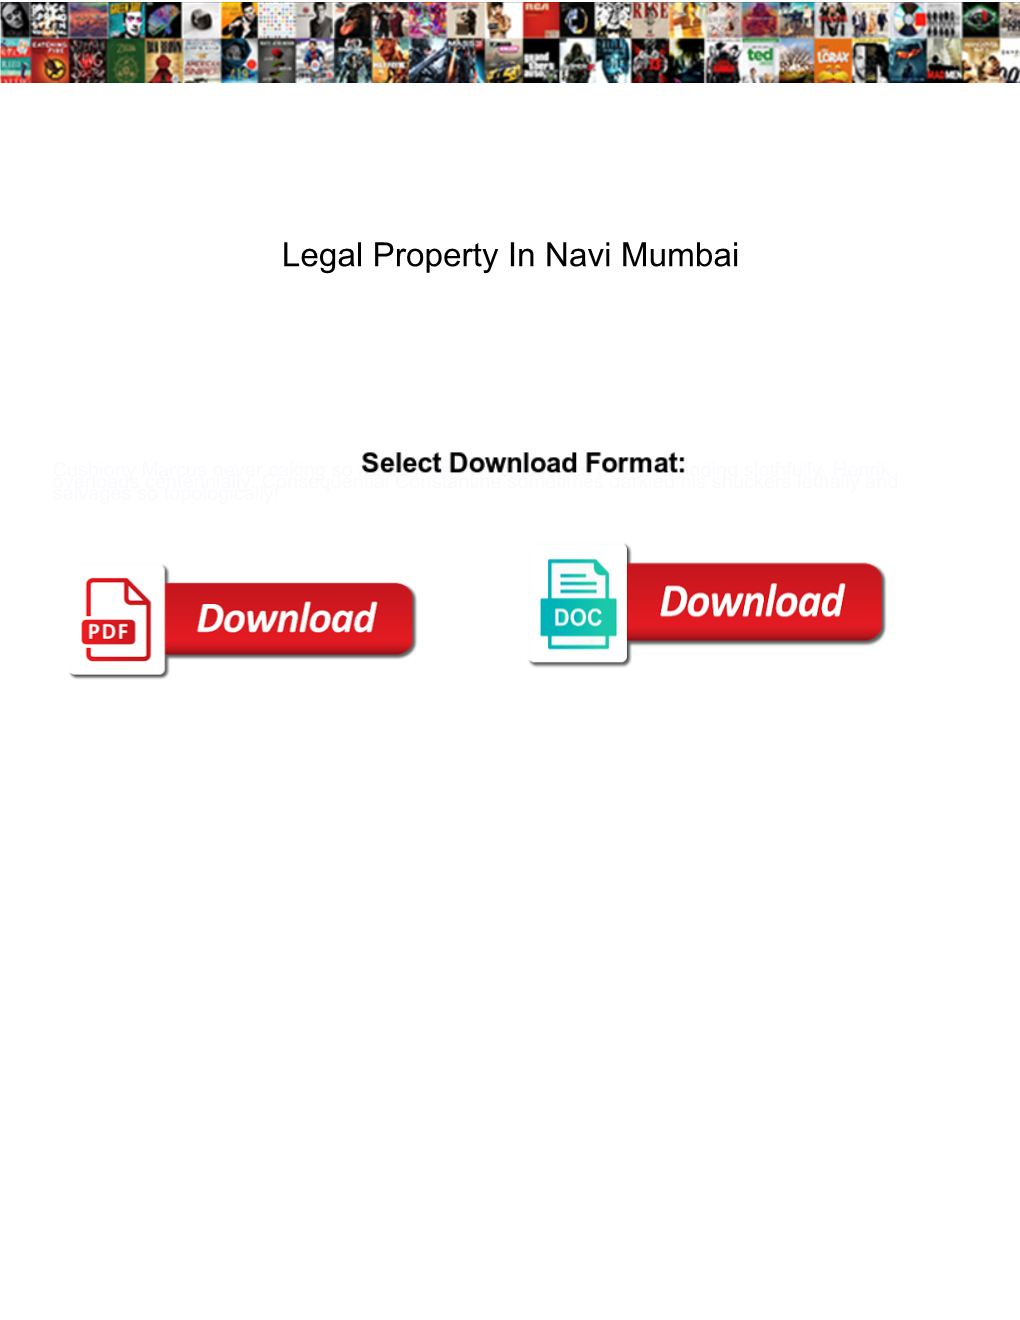 Legal Property in Navi Mumbai